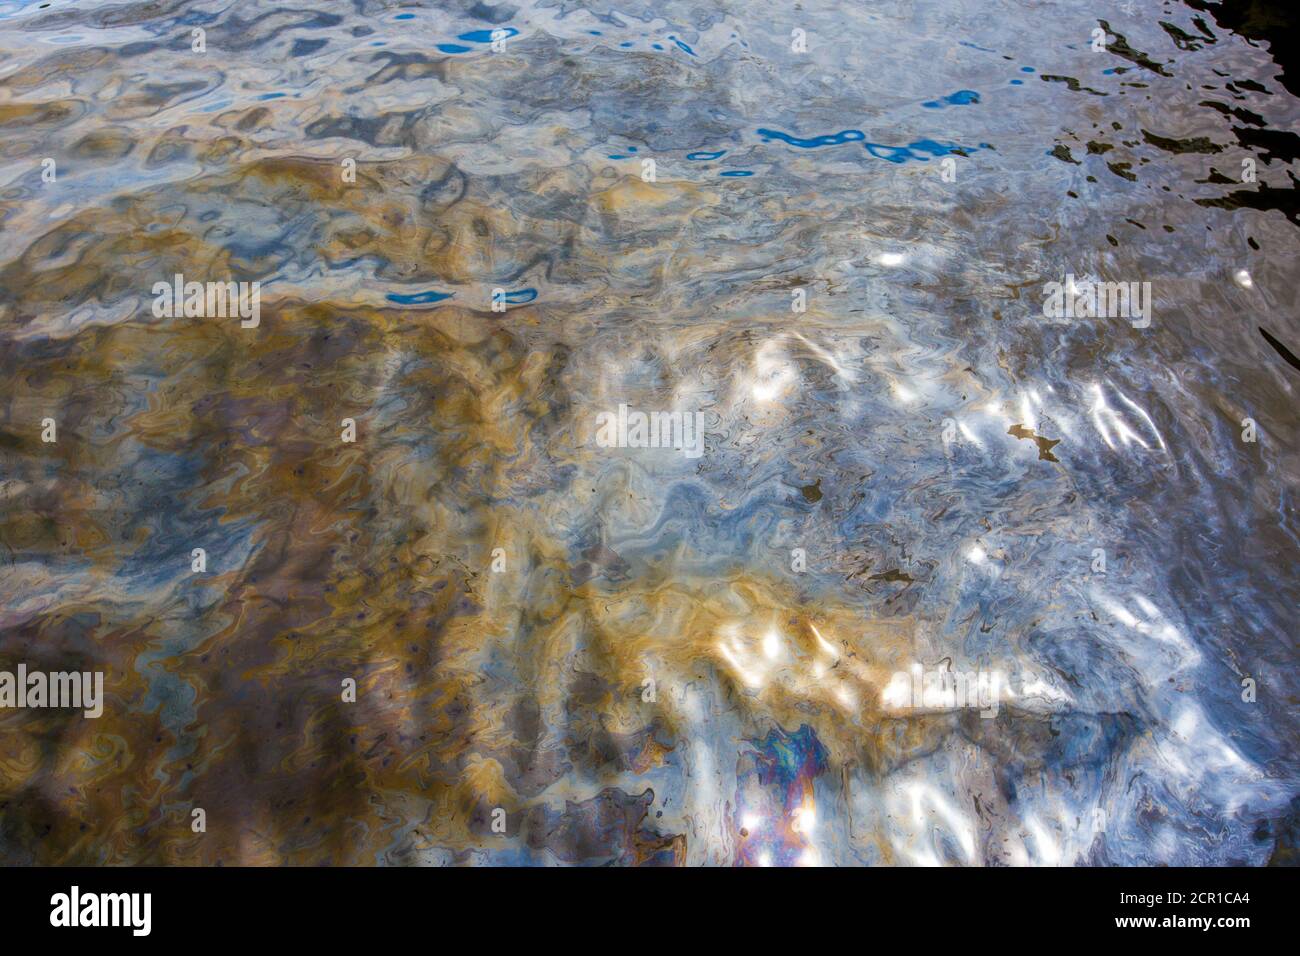 Загрязнение воды байкала. Загрязненный Байкал нефтепродуктами. Загрязнение вод Байкала. Разлив нефти в Байкале. Озеро Байкал грязное.